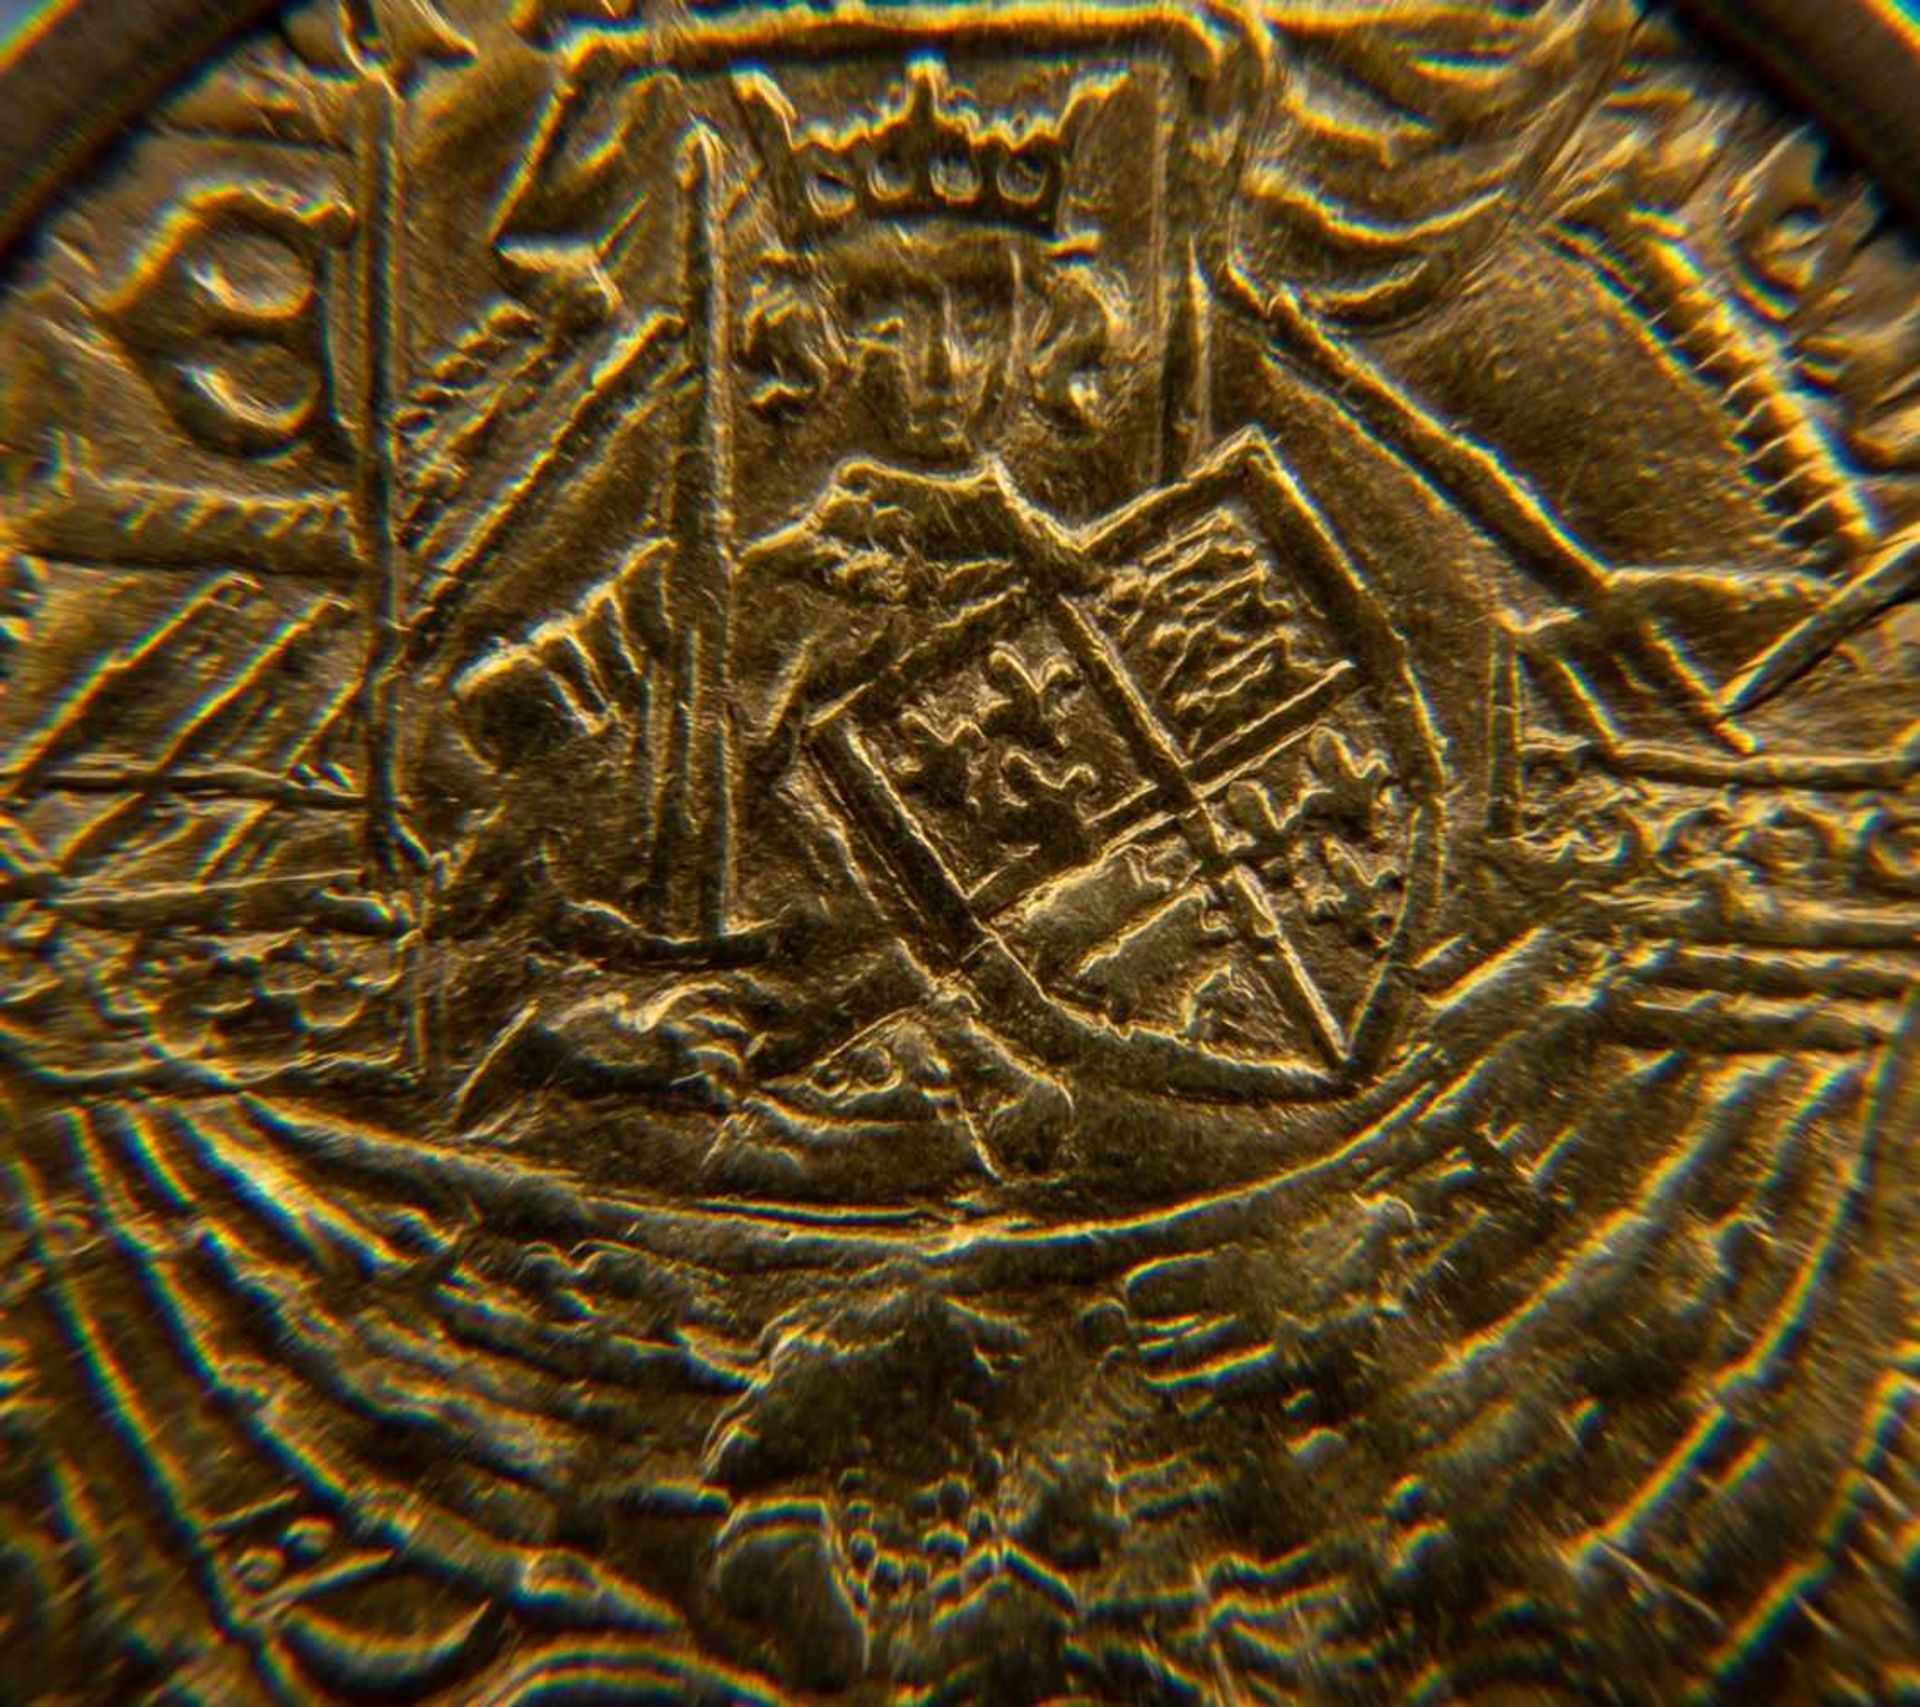 GOLD RYAL / ROSE NOBLE - Goldmünze. England 15. - 17. Jhd., vorderseitig König mit Schwert, Schild & - Bild 6 aus 15